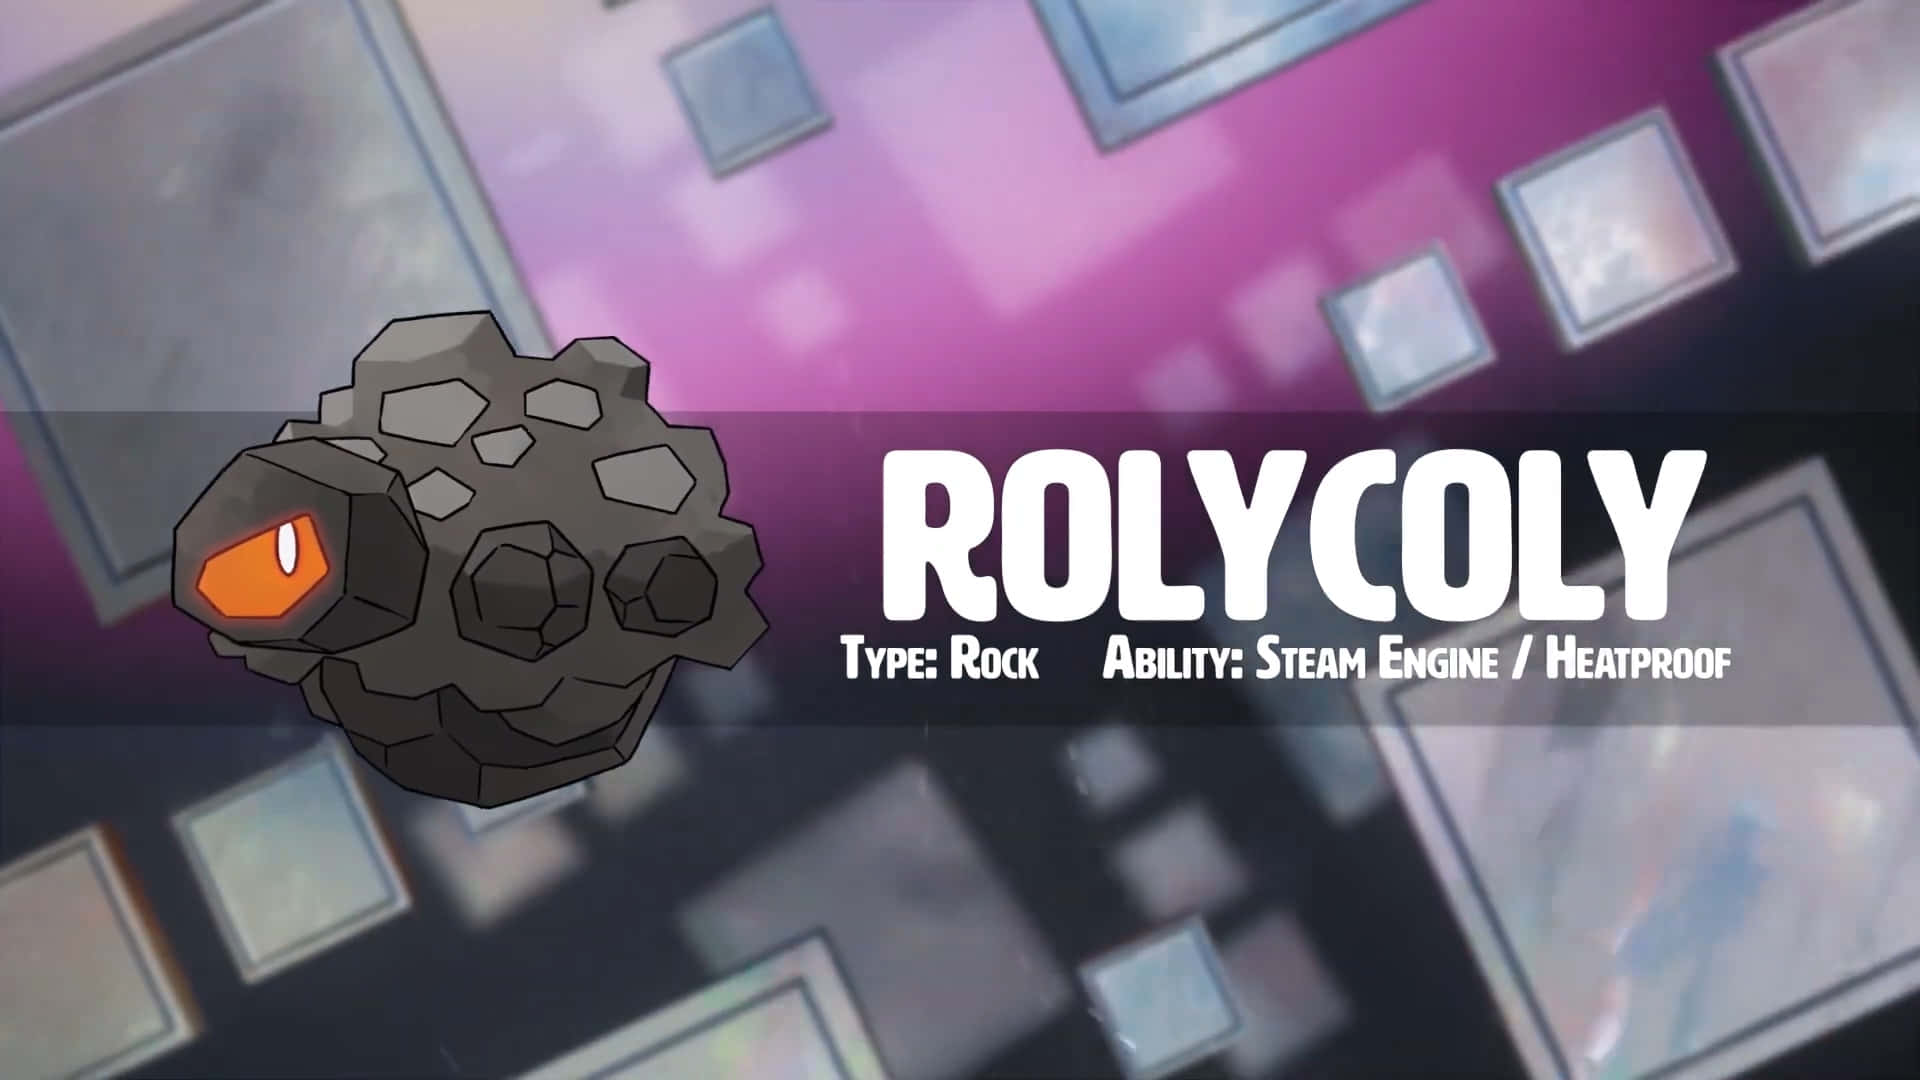 Download Rolycoly A Rock Type Pokémon Wallpaper